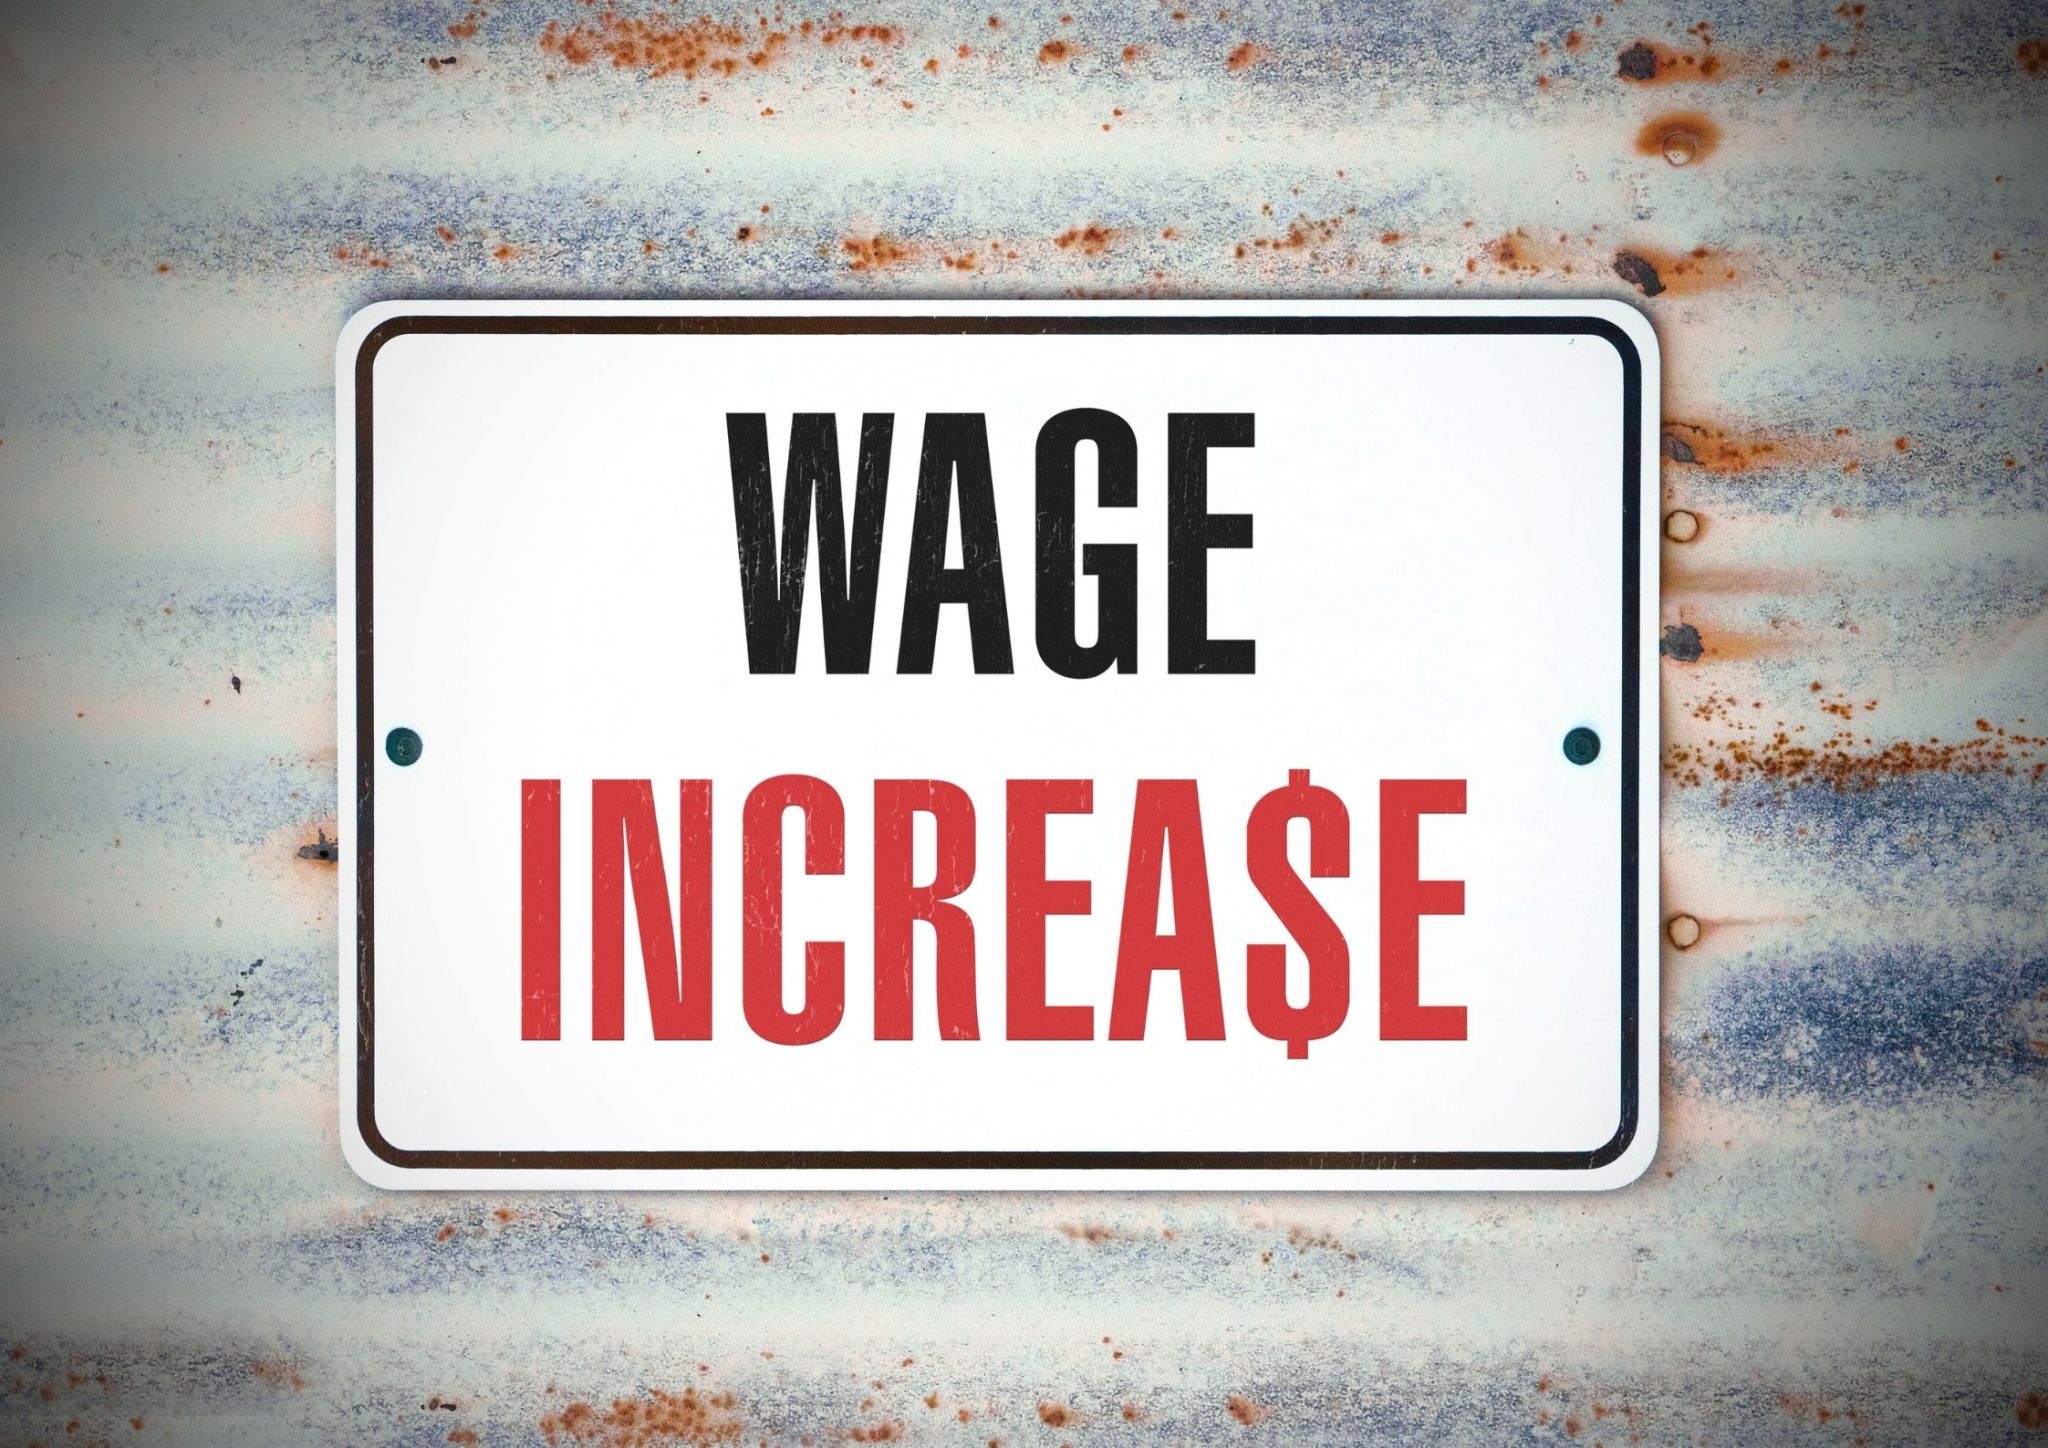 Los Salarios de los Trabajadores en Estados Unidos se Incrementaron un 4,7% en los últimos 12 meses